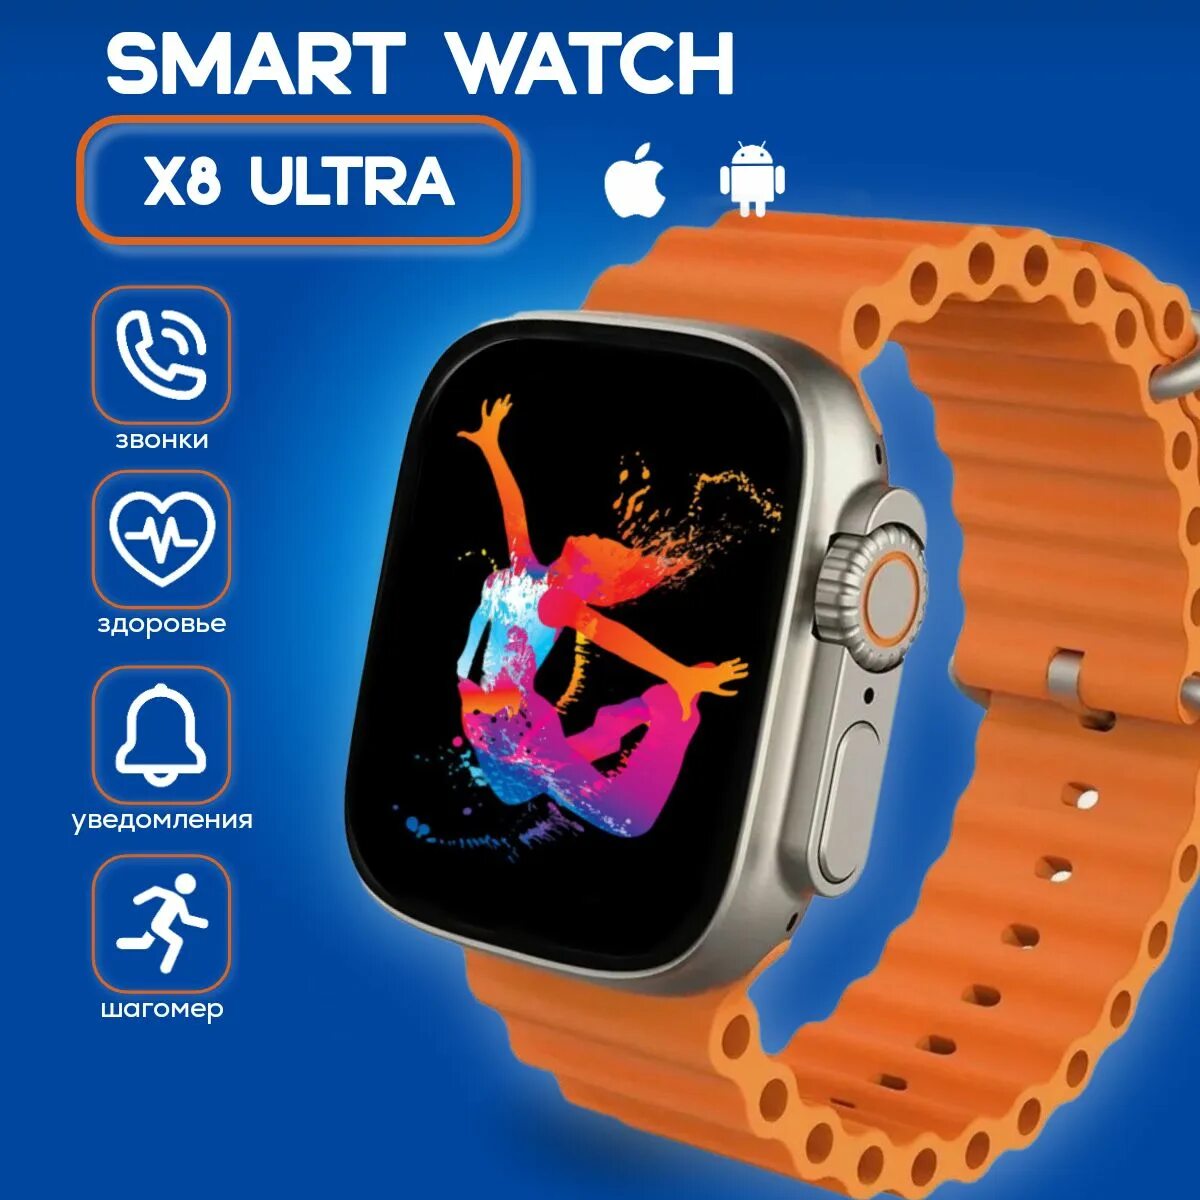 X8 Ultra Smart watch. SMARTWATCH 8 Ultra. Смарт часы x8 Plus Ultra. Умные часы x8 Ultra смарт часы.